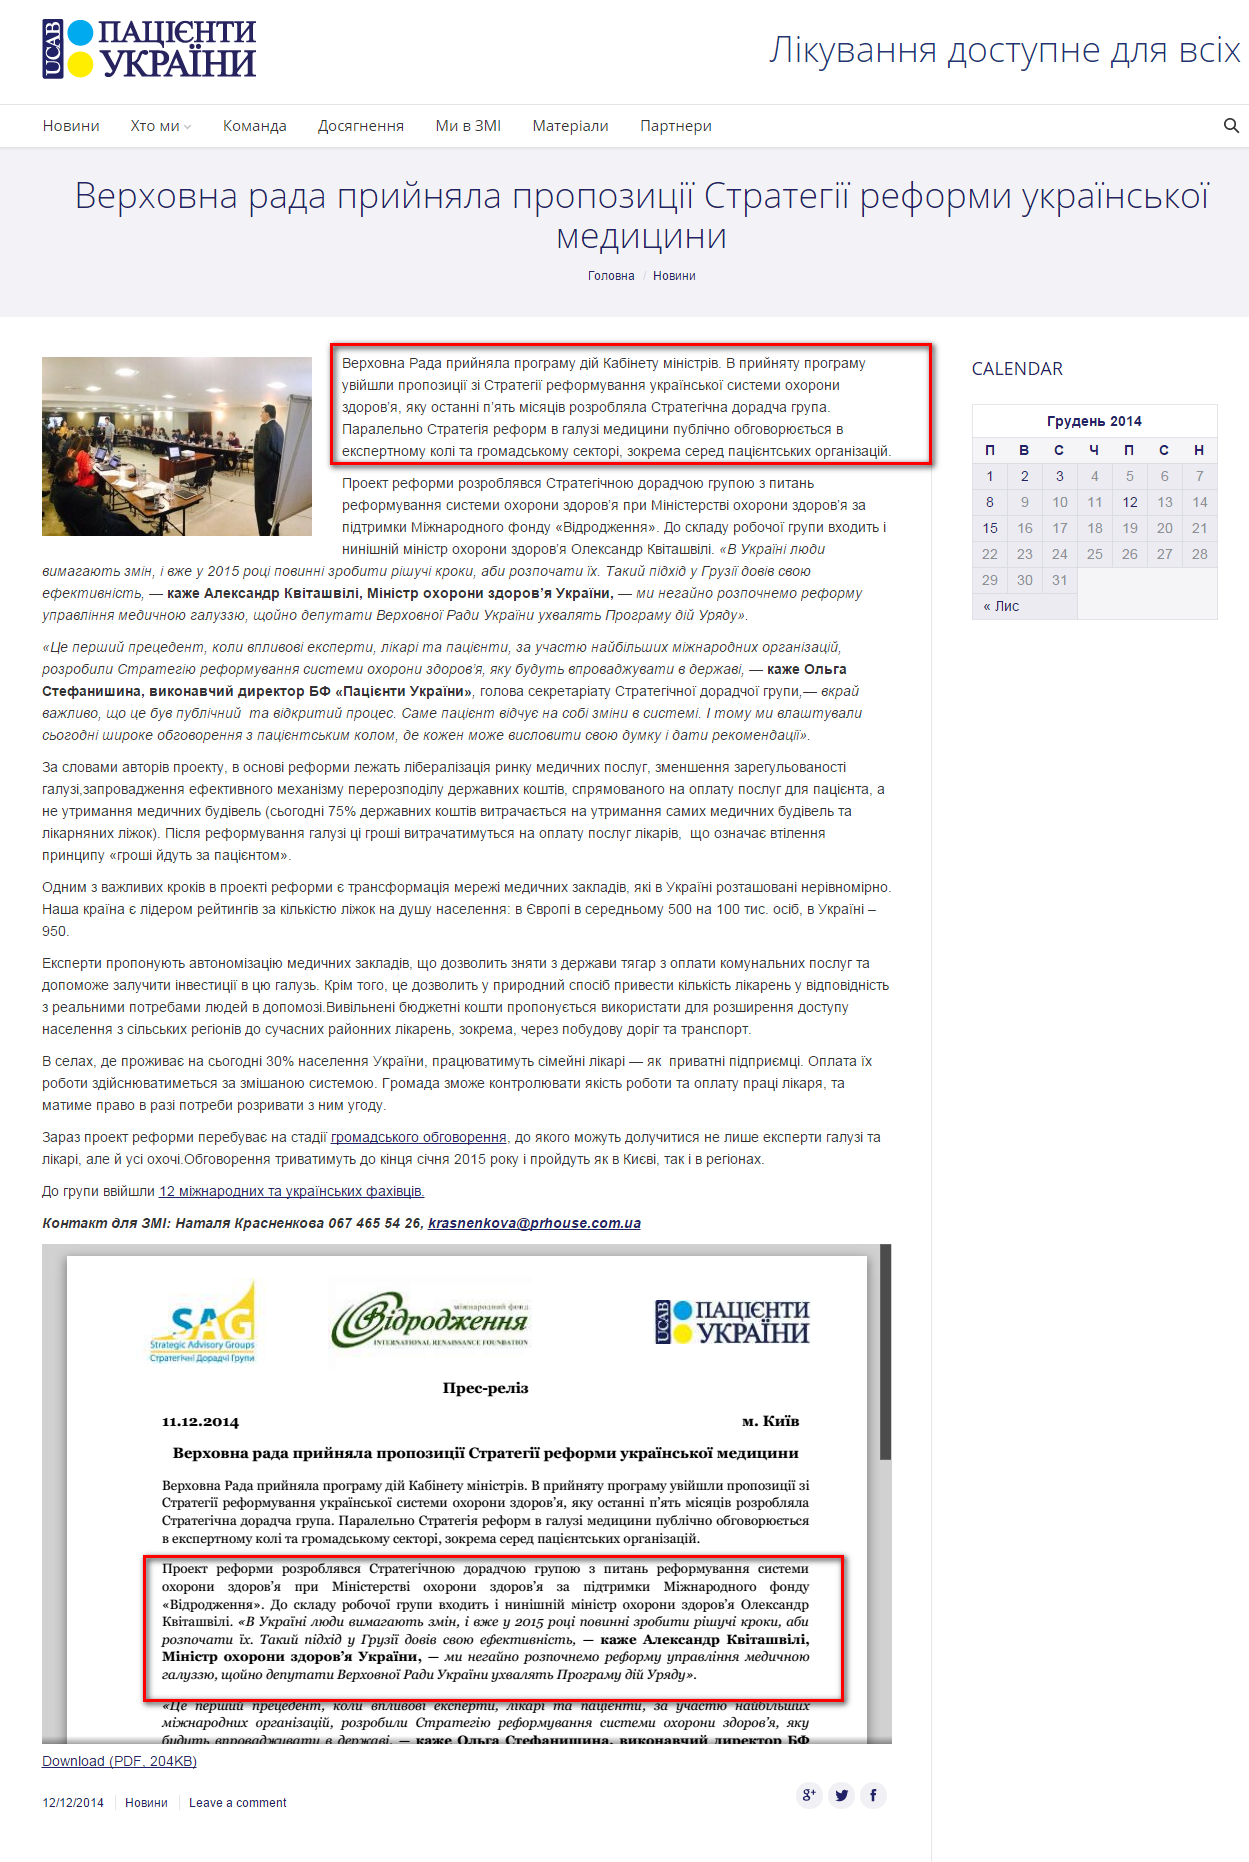 http://patients.org.ua/2014/12/12/verhovna-rada-prijnyala-propozitsiyi-strategiyi-reformi-ukrayinskoyi-meditsini/